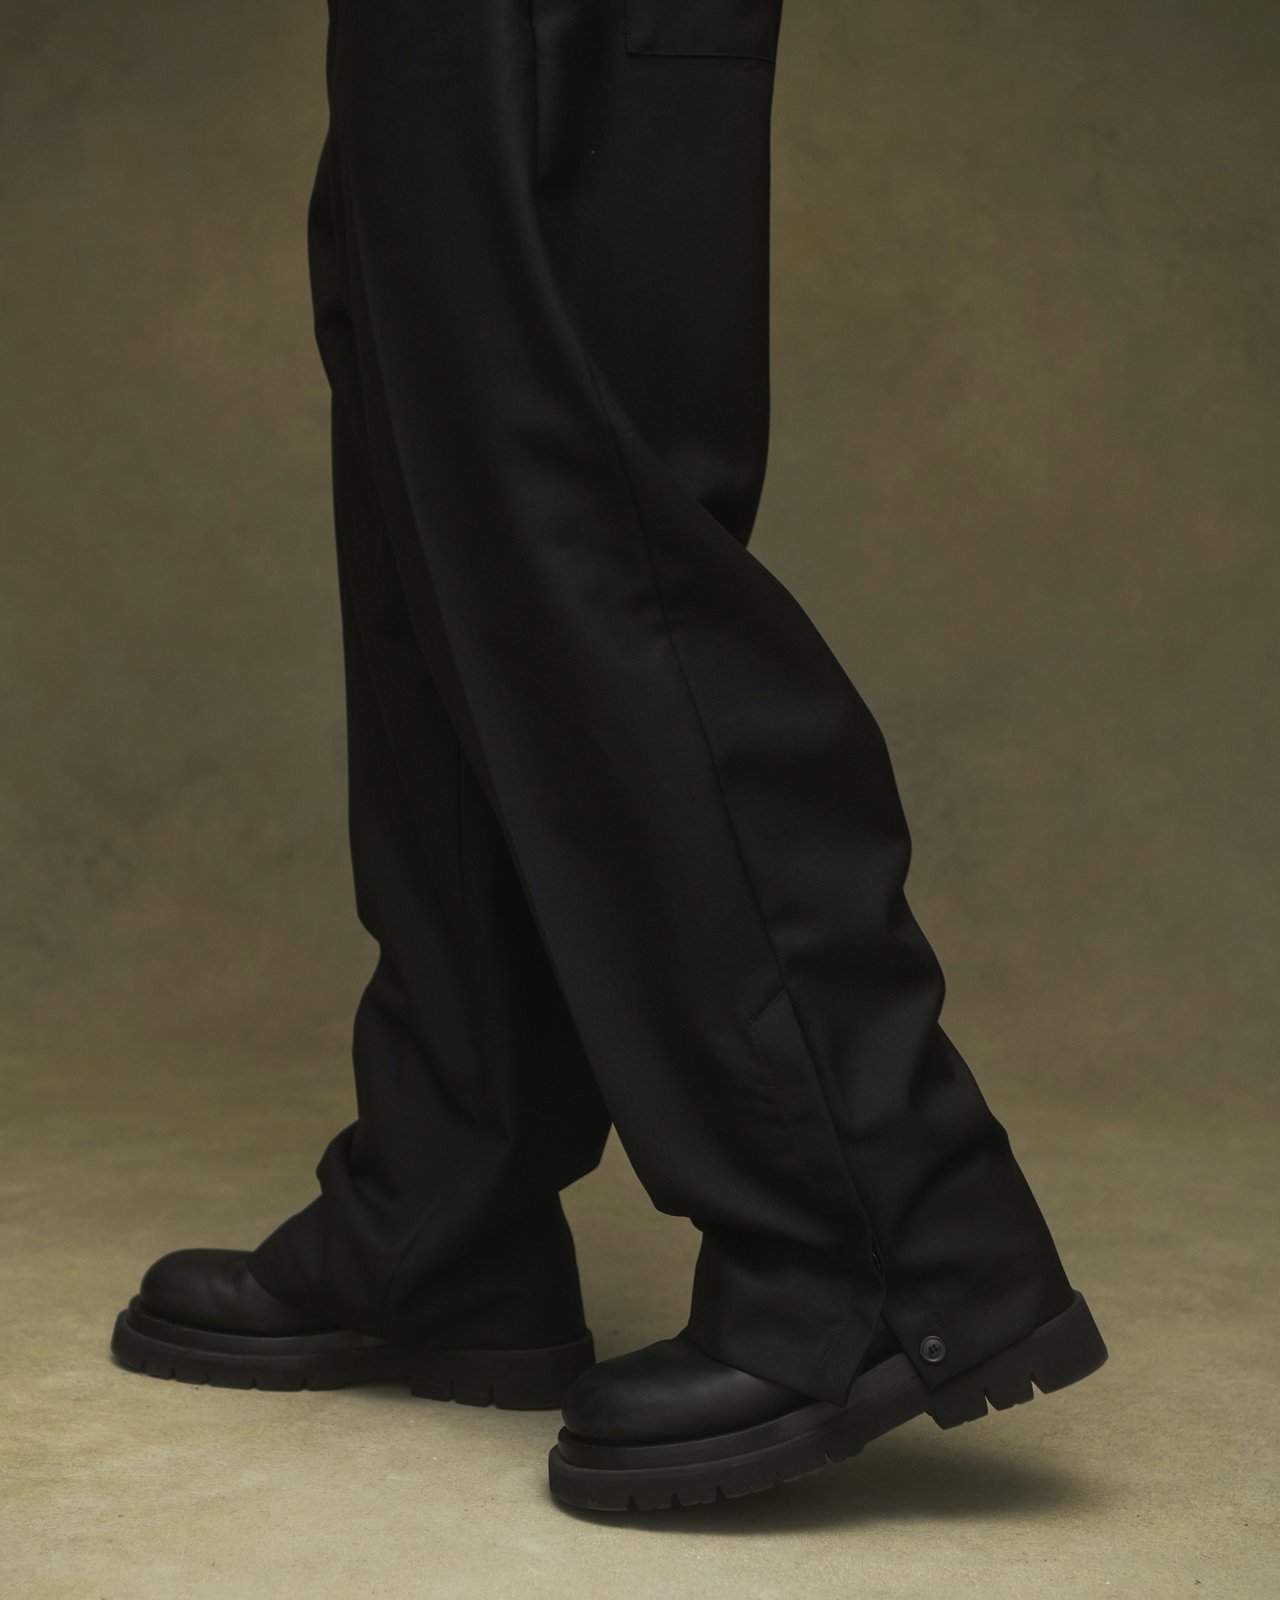 Lownn — Black Wool Twill Straight Pants